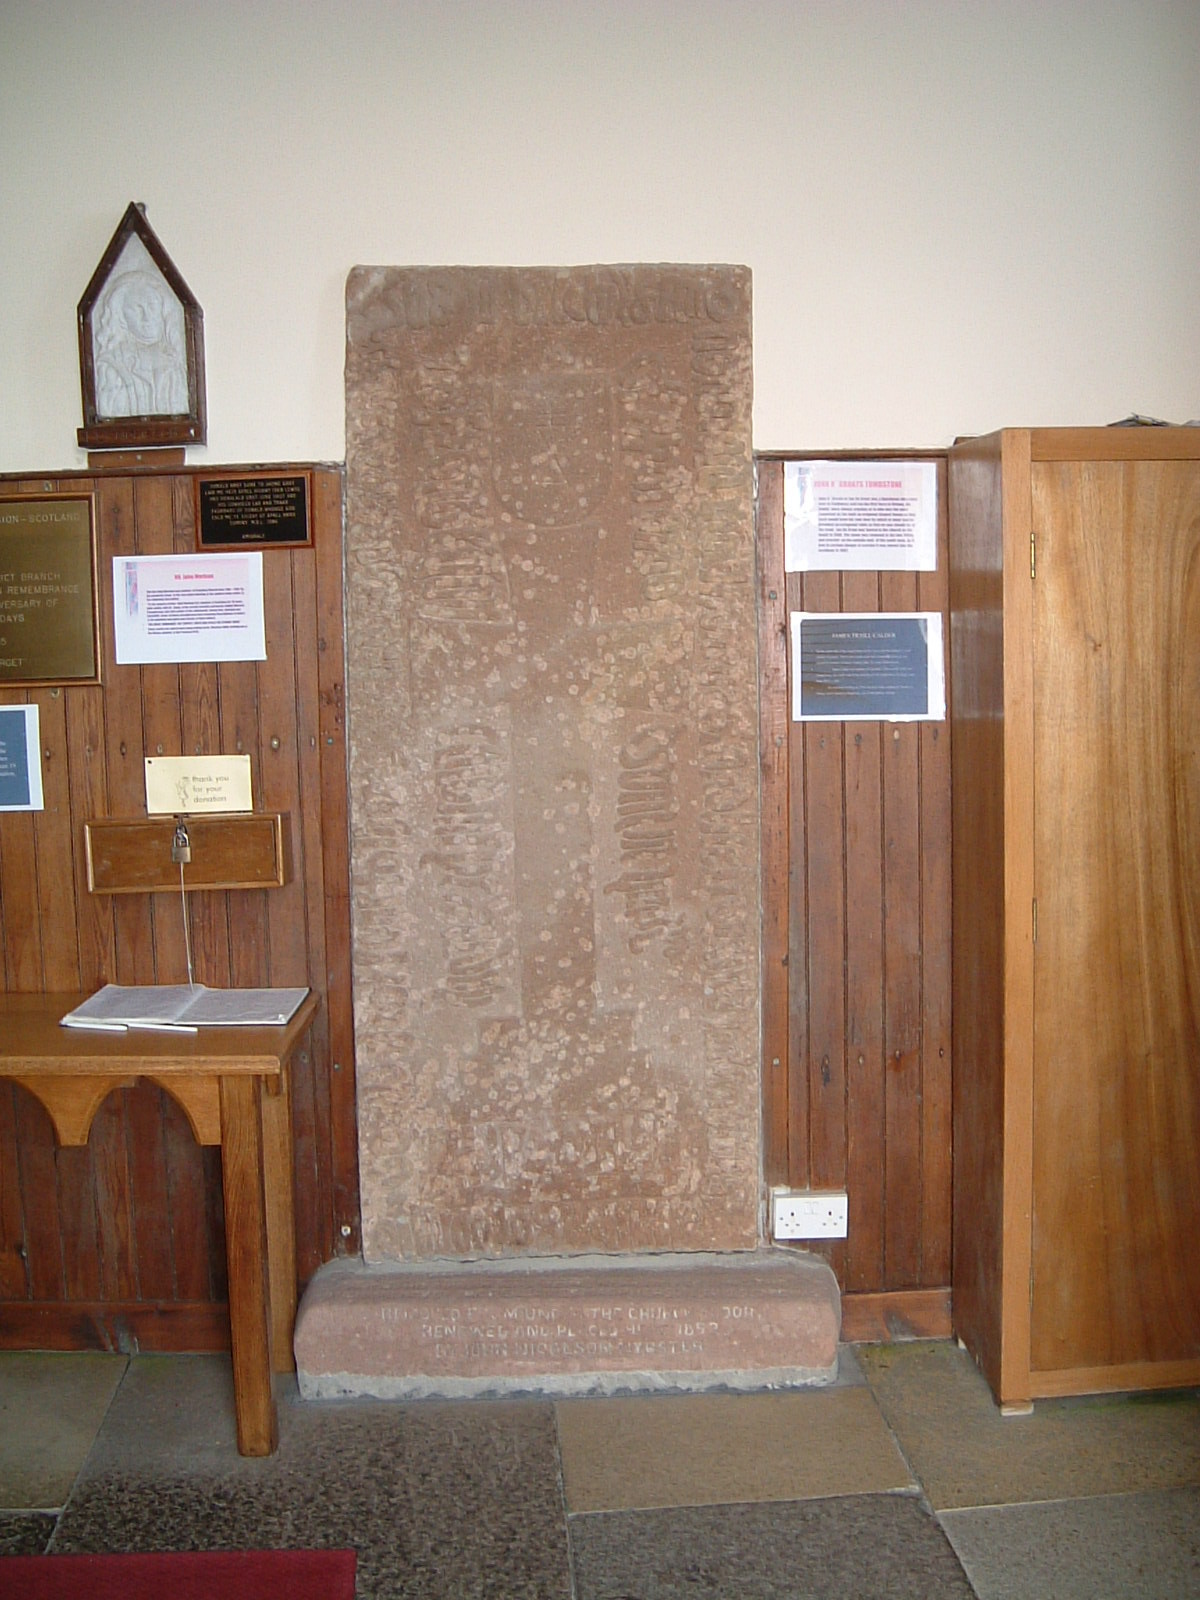 Jan de Groot's tombstone